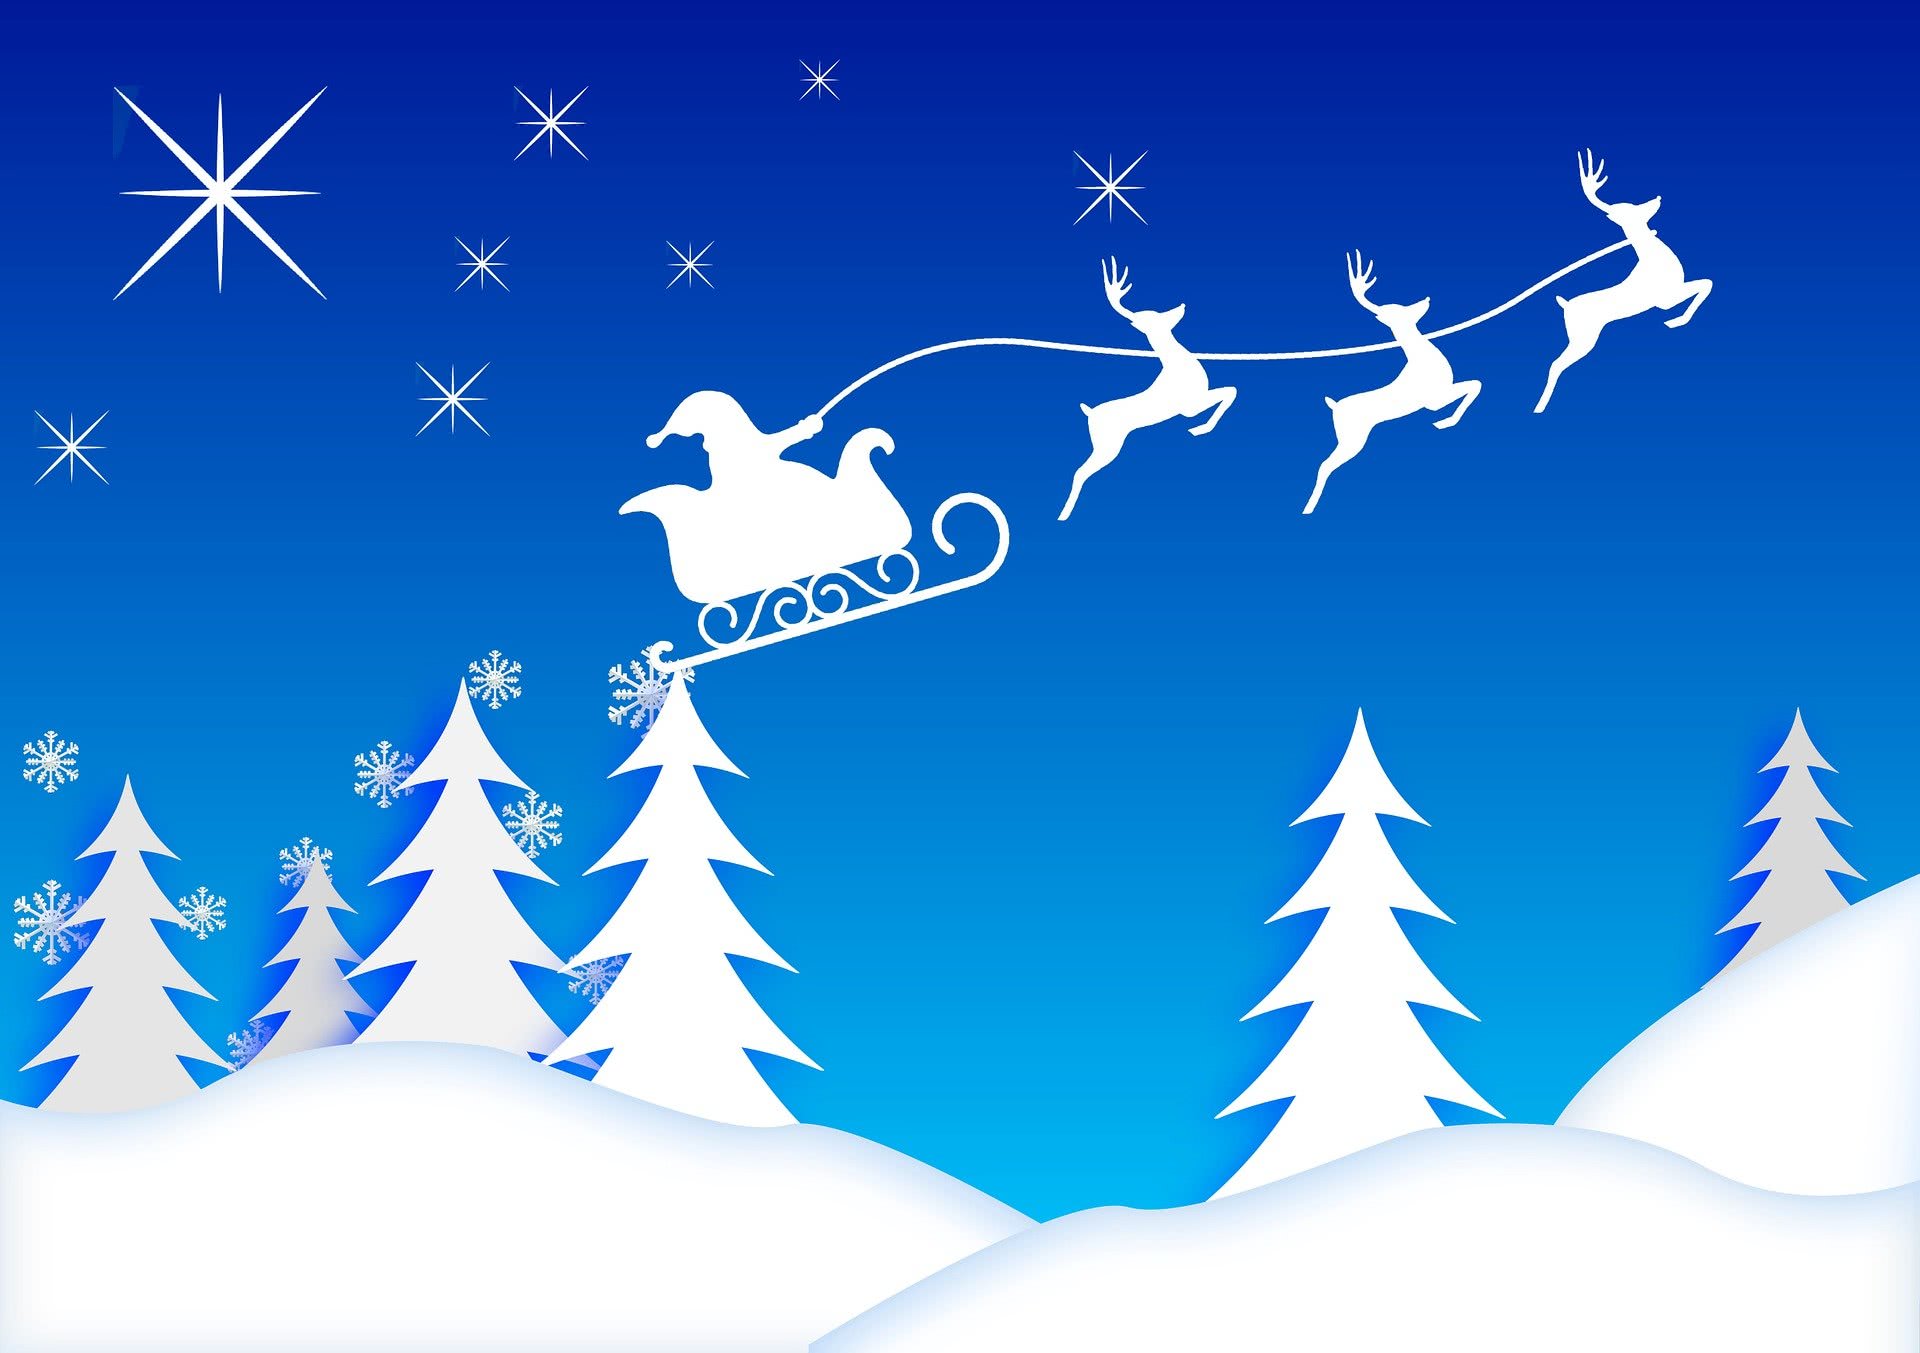 Santa sleigh blue